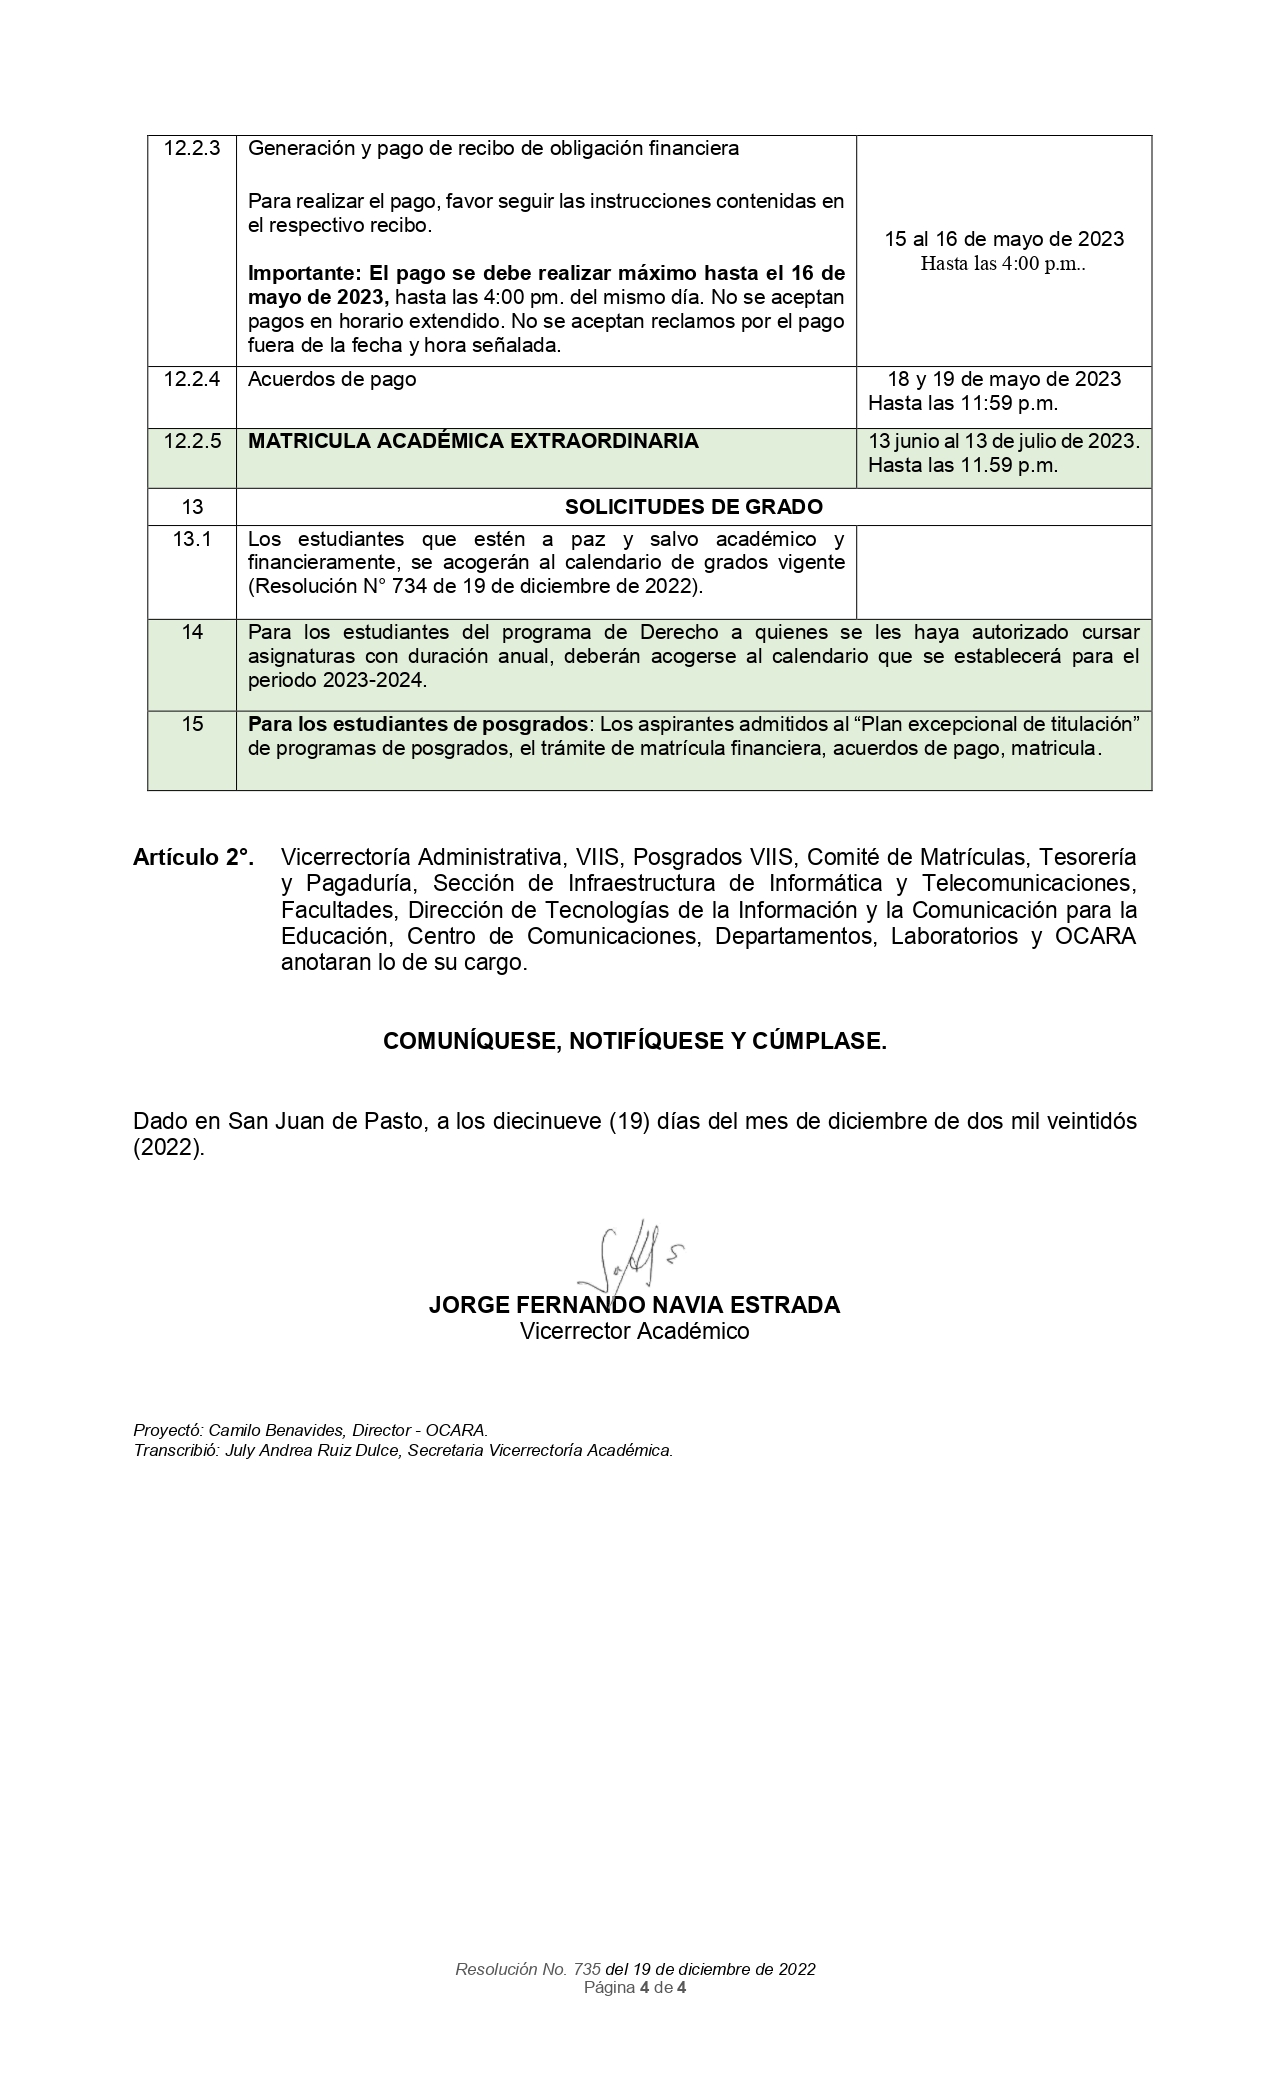 resolucion_no_735_2022_calendario_plan_excepcional_de_titulaciónA2023_page-0004